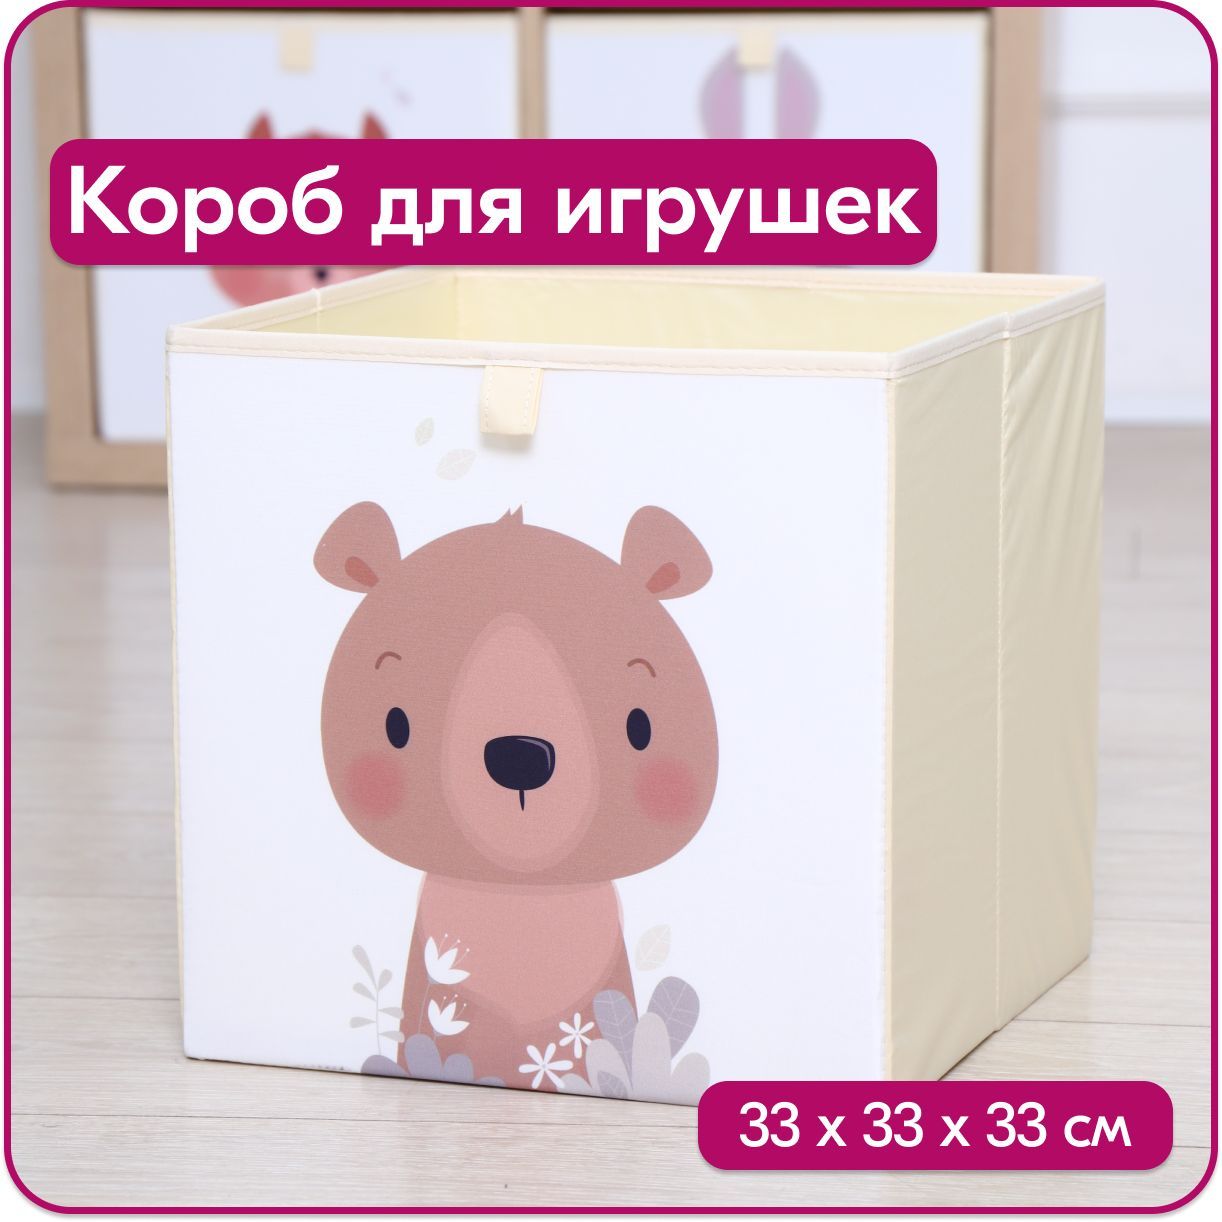 Ящик для игрушек HappySava Медведь размер 33x33x33 см объем 35 литров